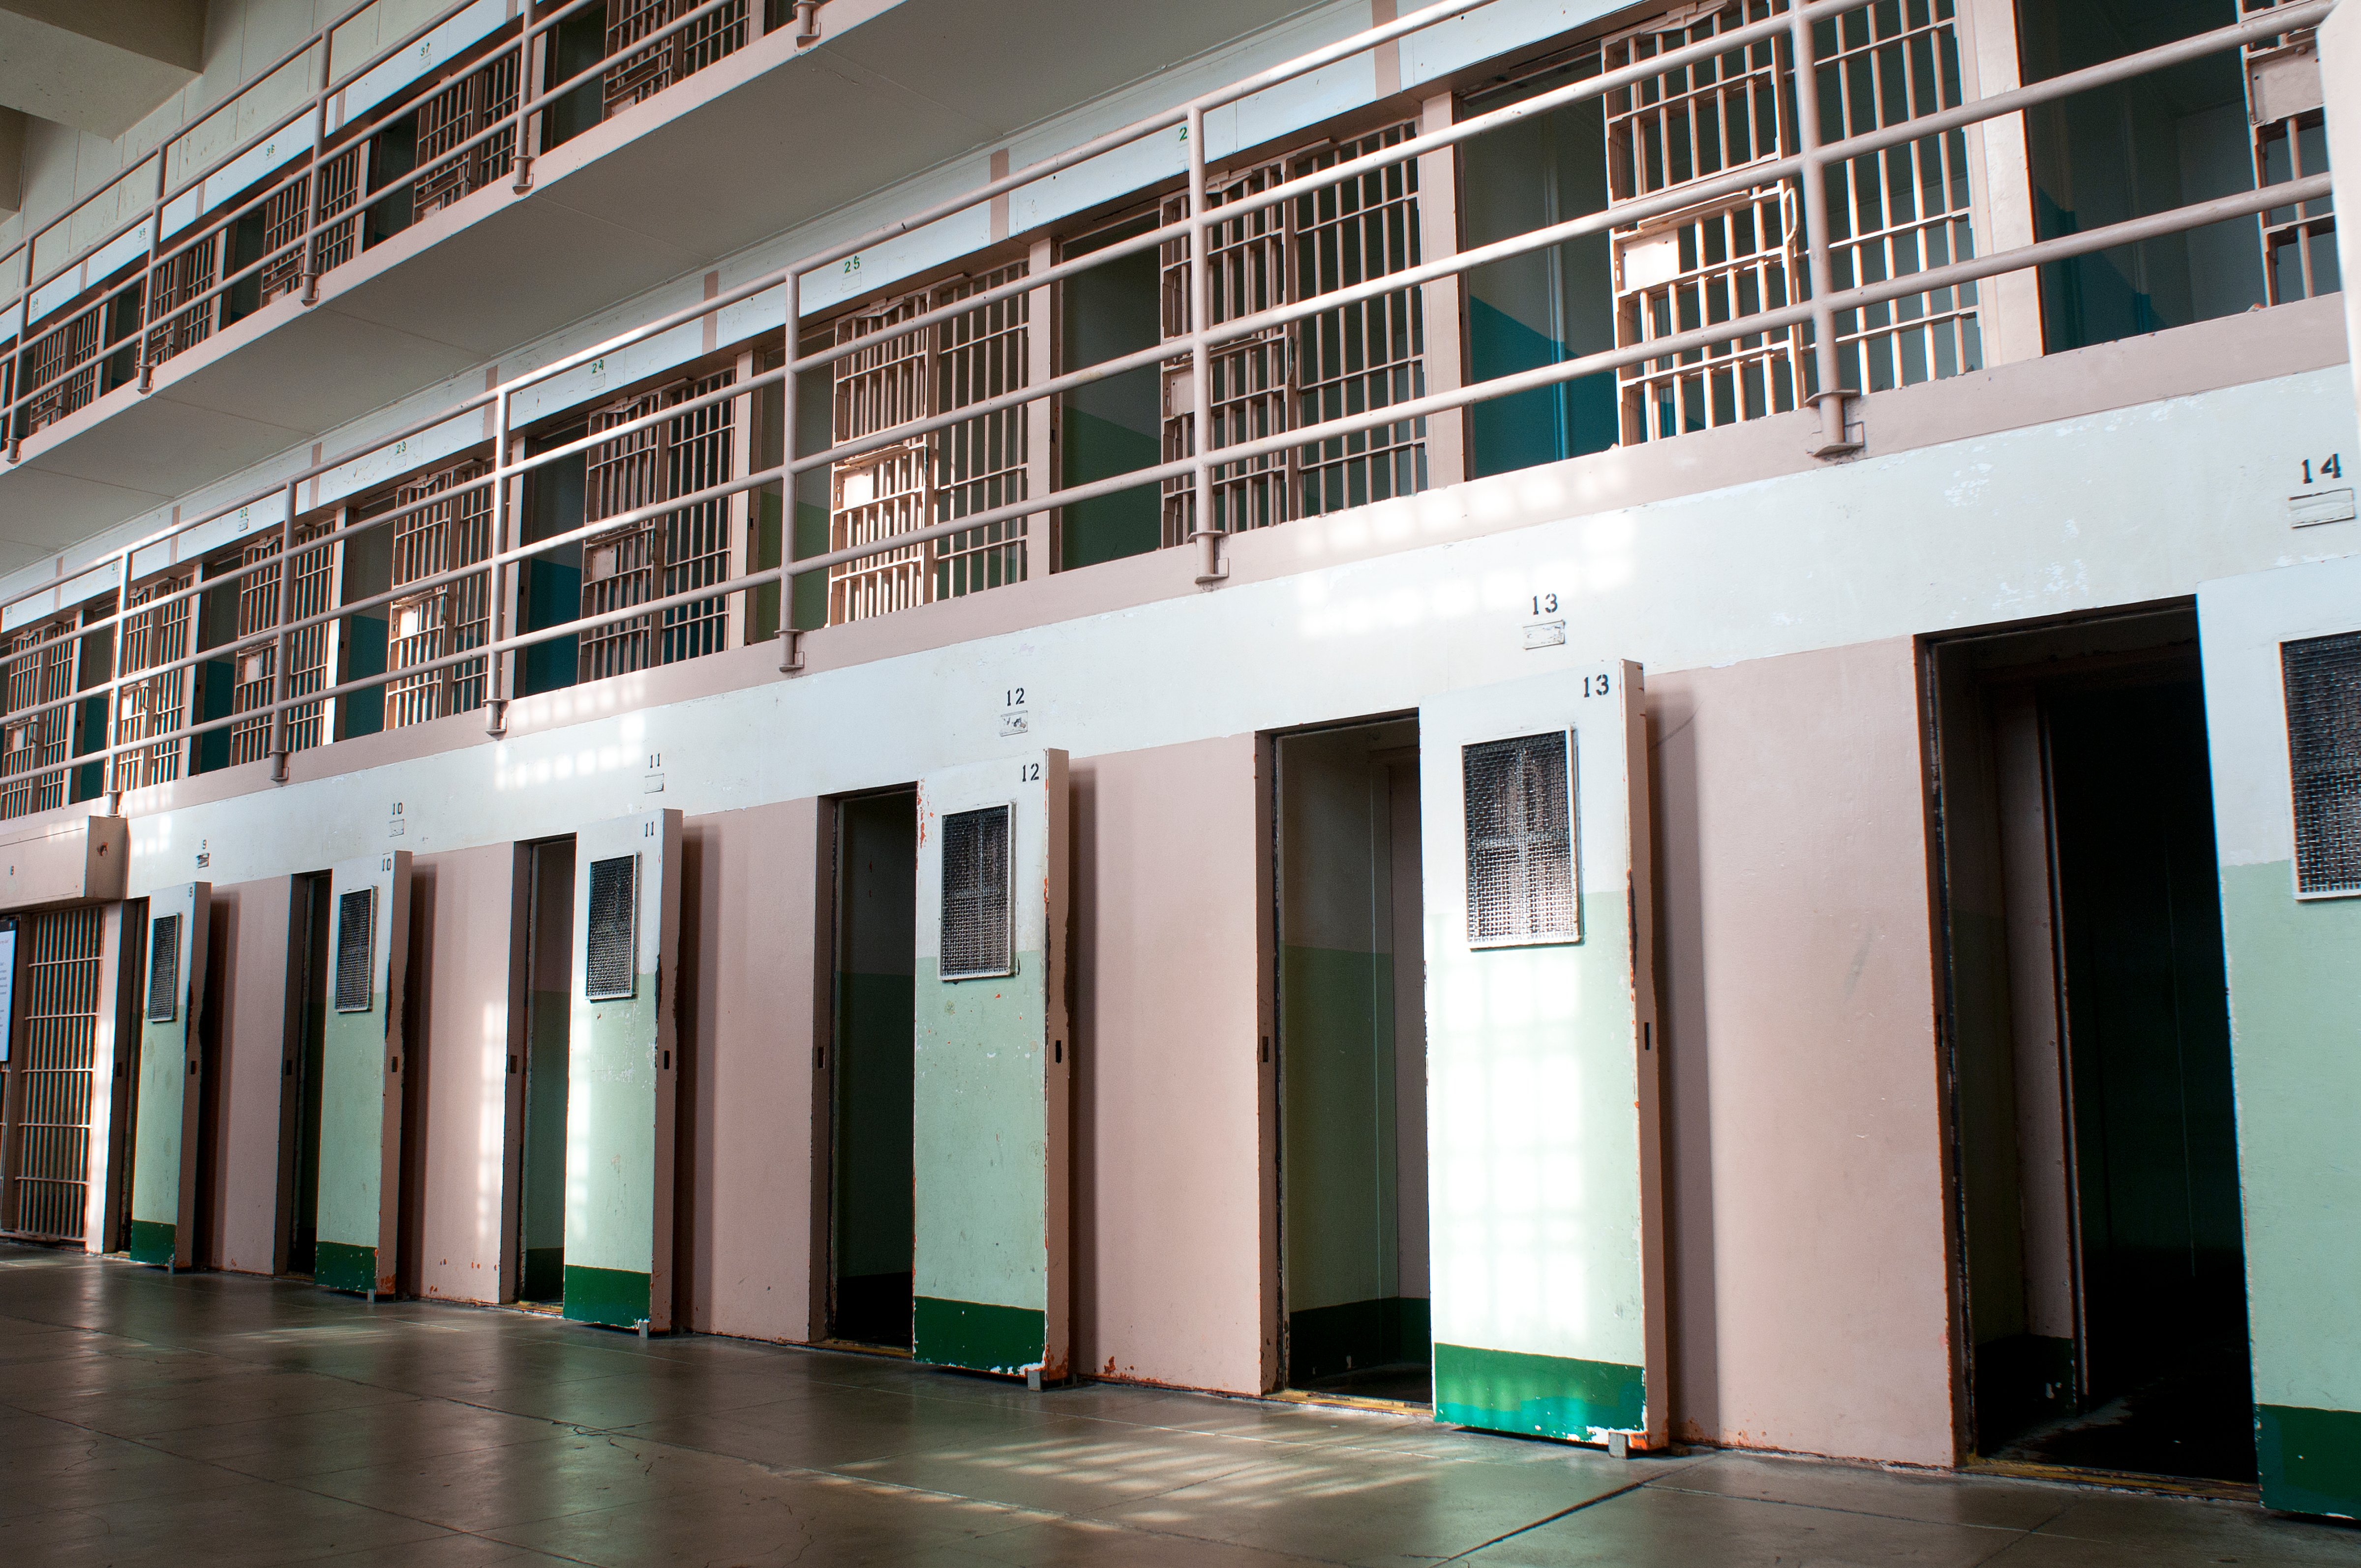 Solitary confinement cells in Alcatraz Prison